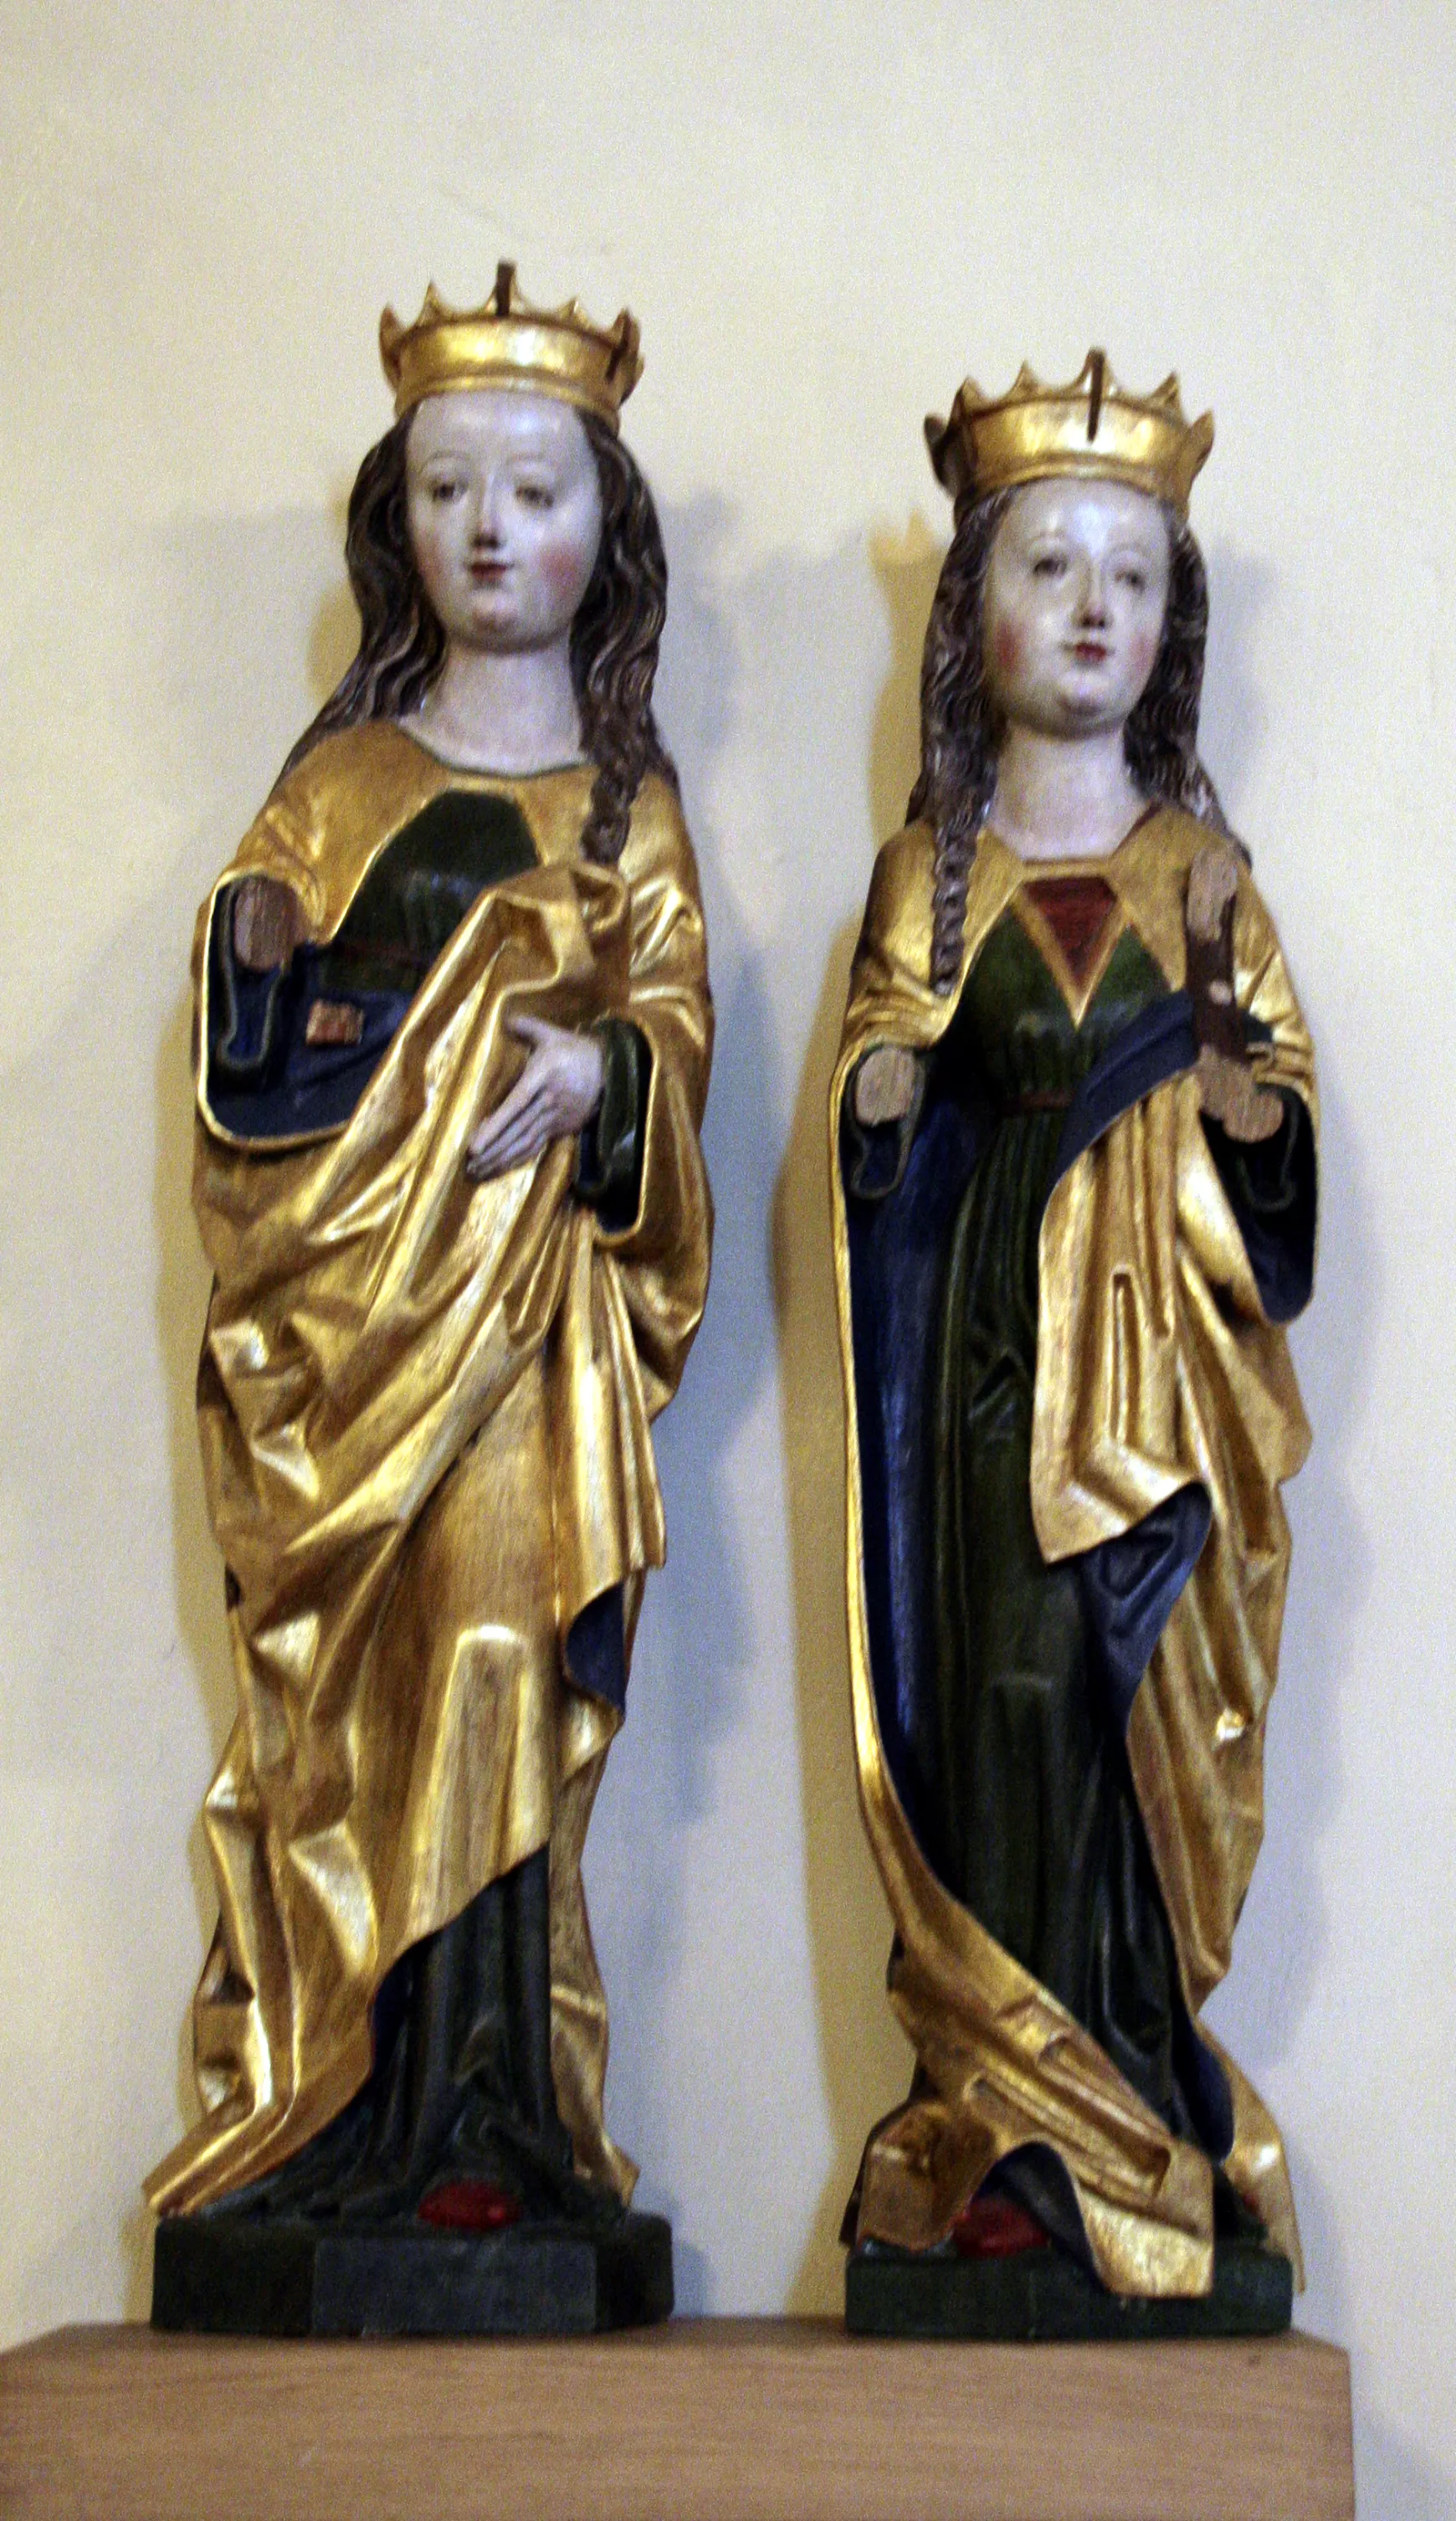 Szent Katalin és Szent Borbála gótikus faragott szobra